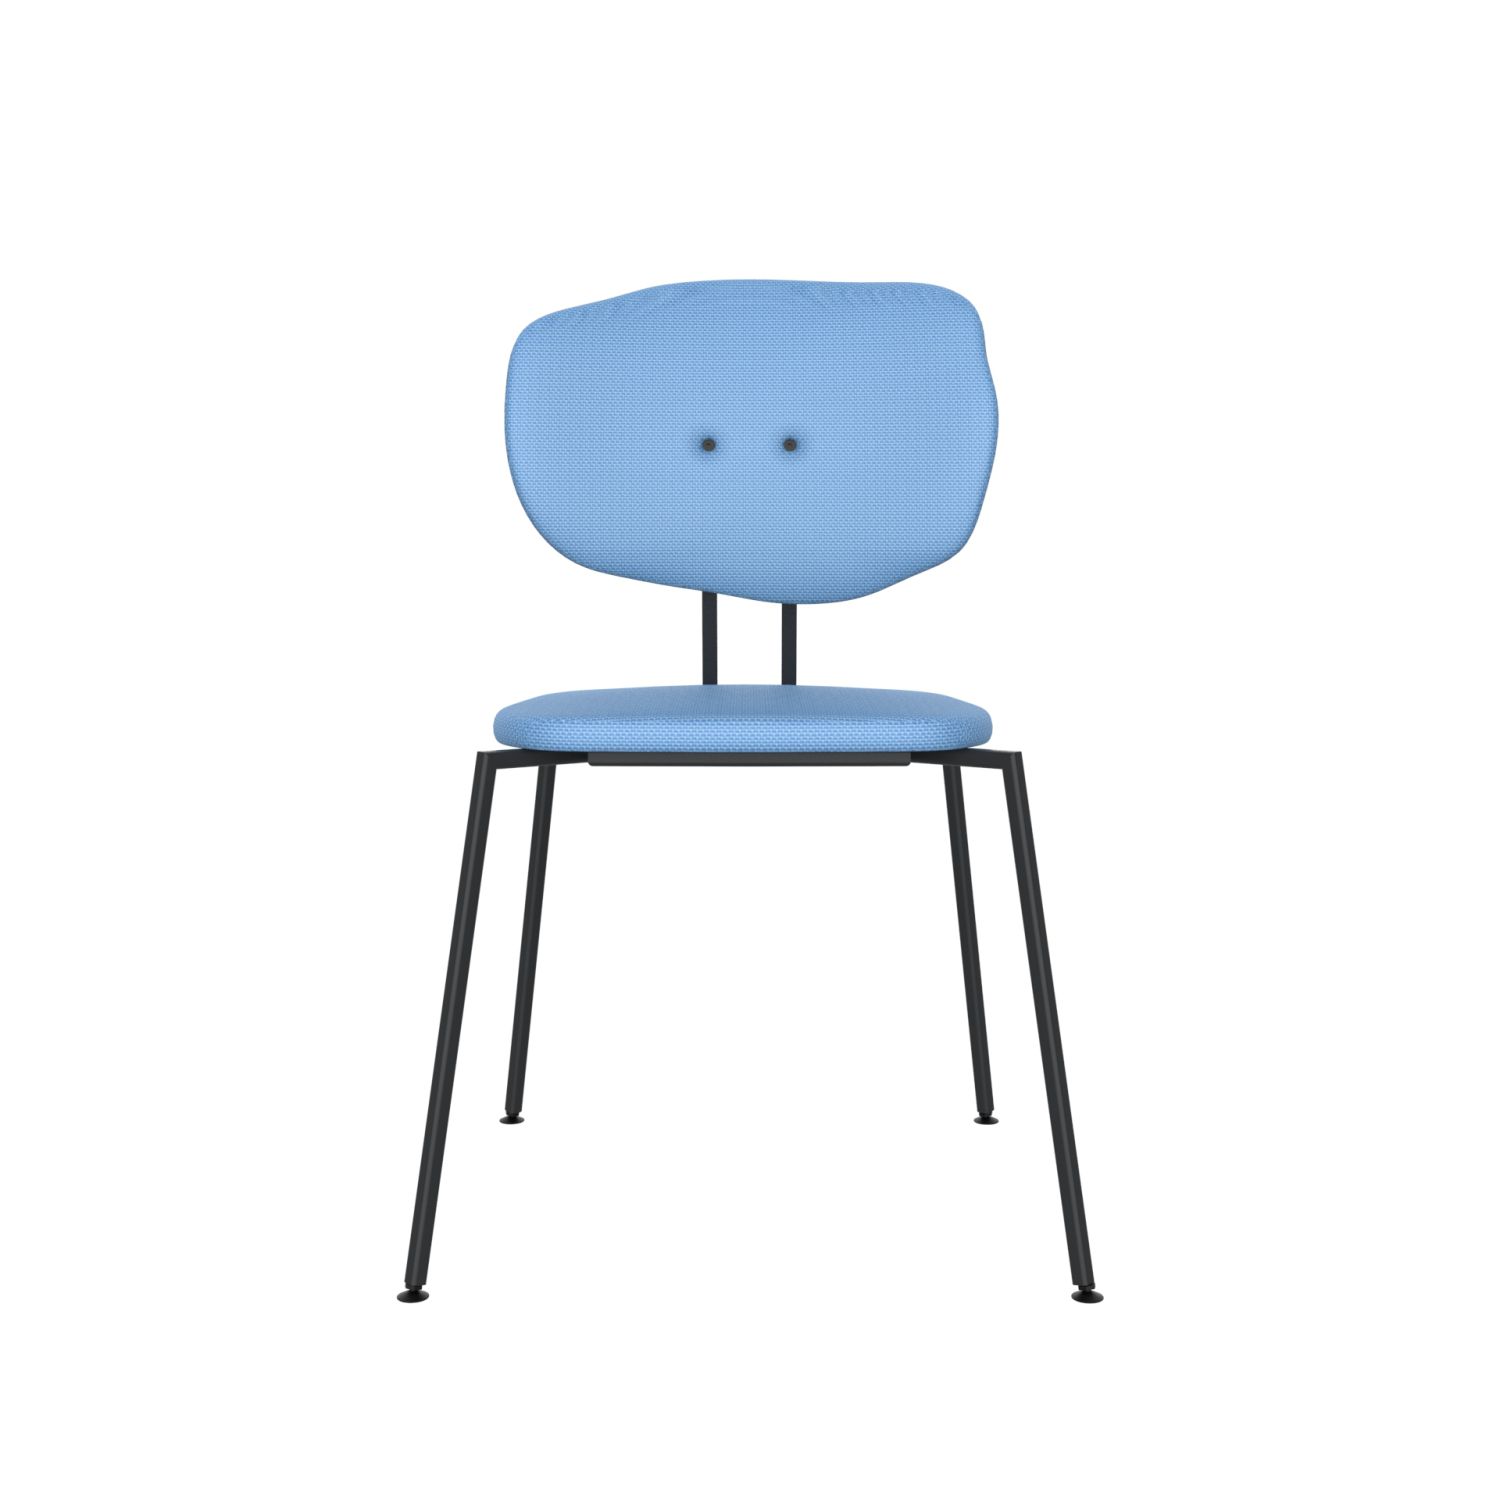 lensvelt maarten baas chair 141 stackable without armrests backrest f blue horizon 040 black ral9005 hard leg ends